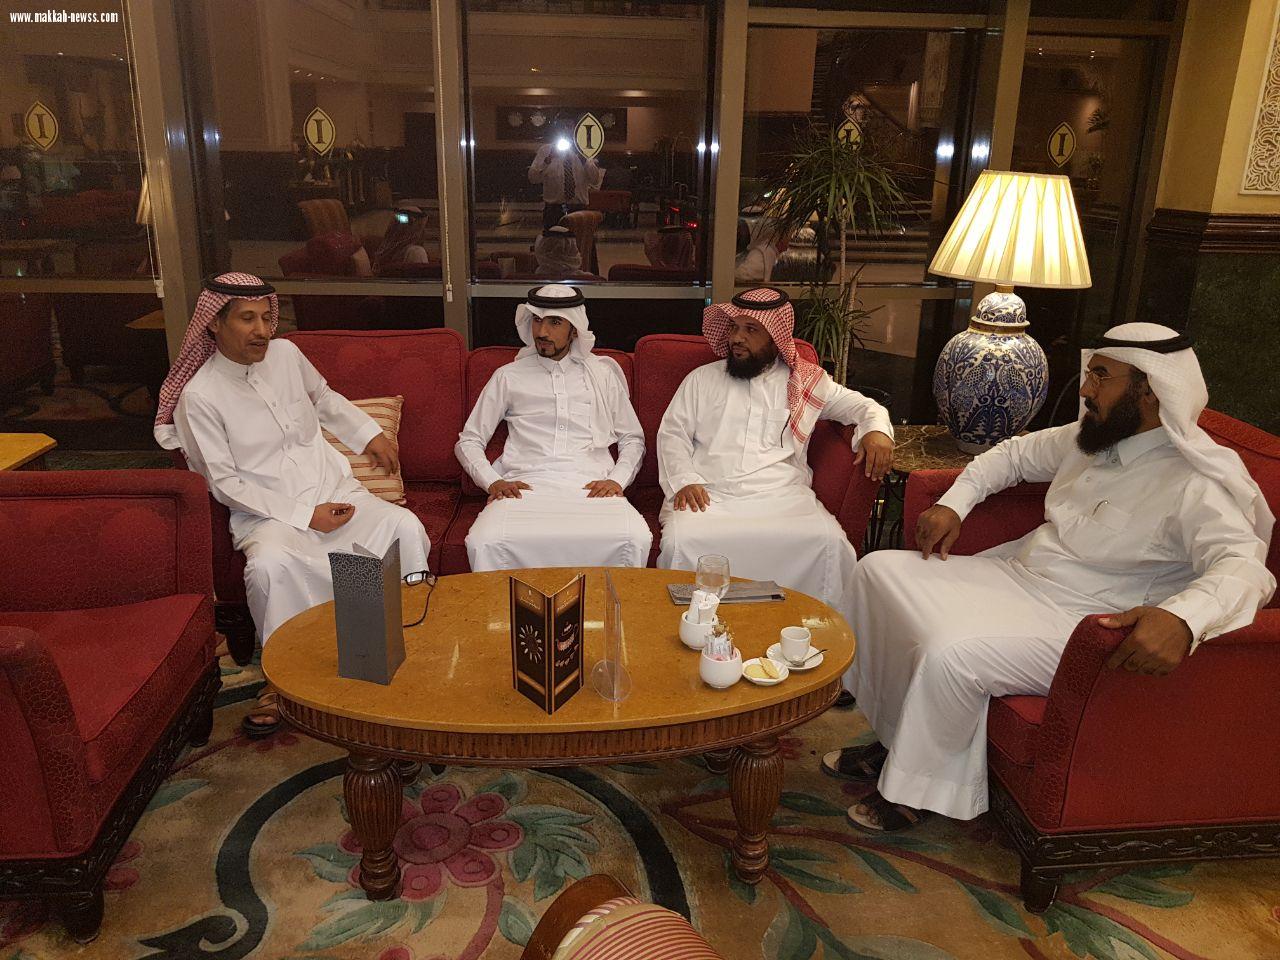 شبكة نادي الصحافة السعودي يستضيف أول رحالة عربي يقطع دول الخليج بدراجته في ستة آيام